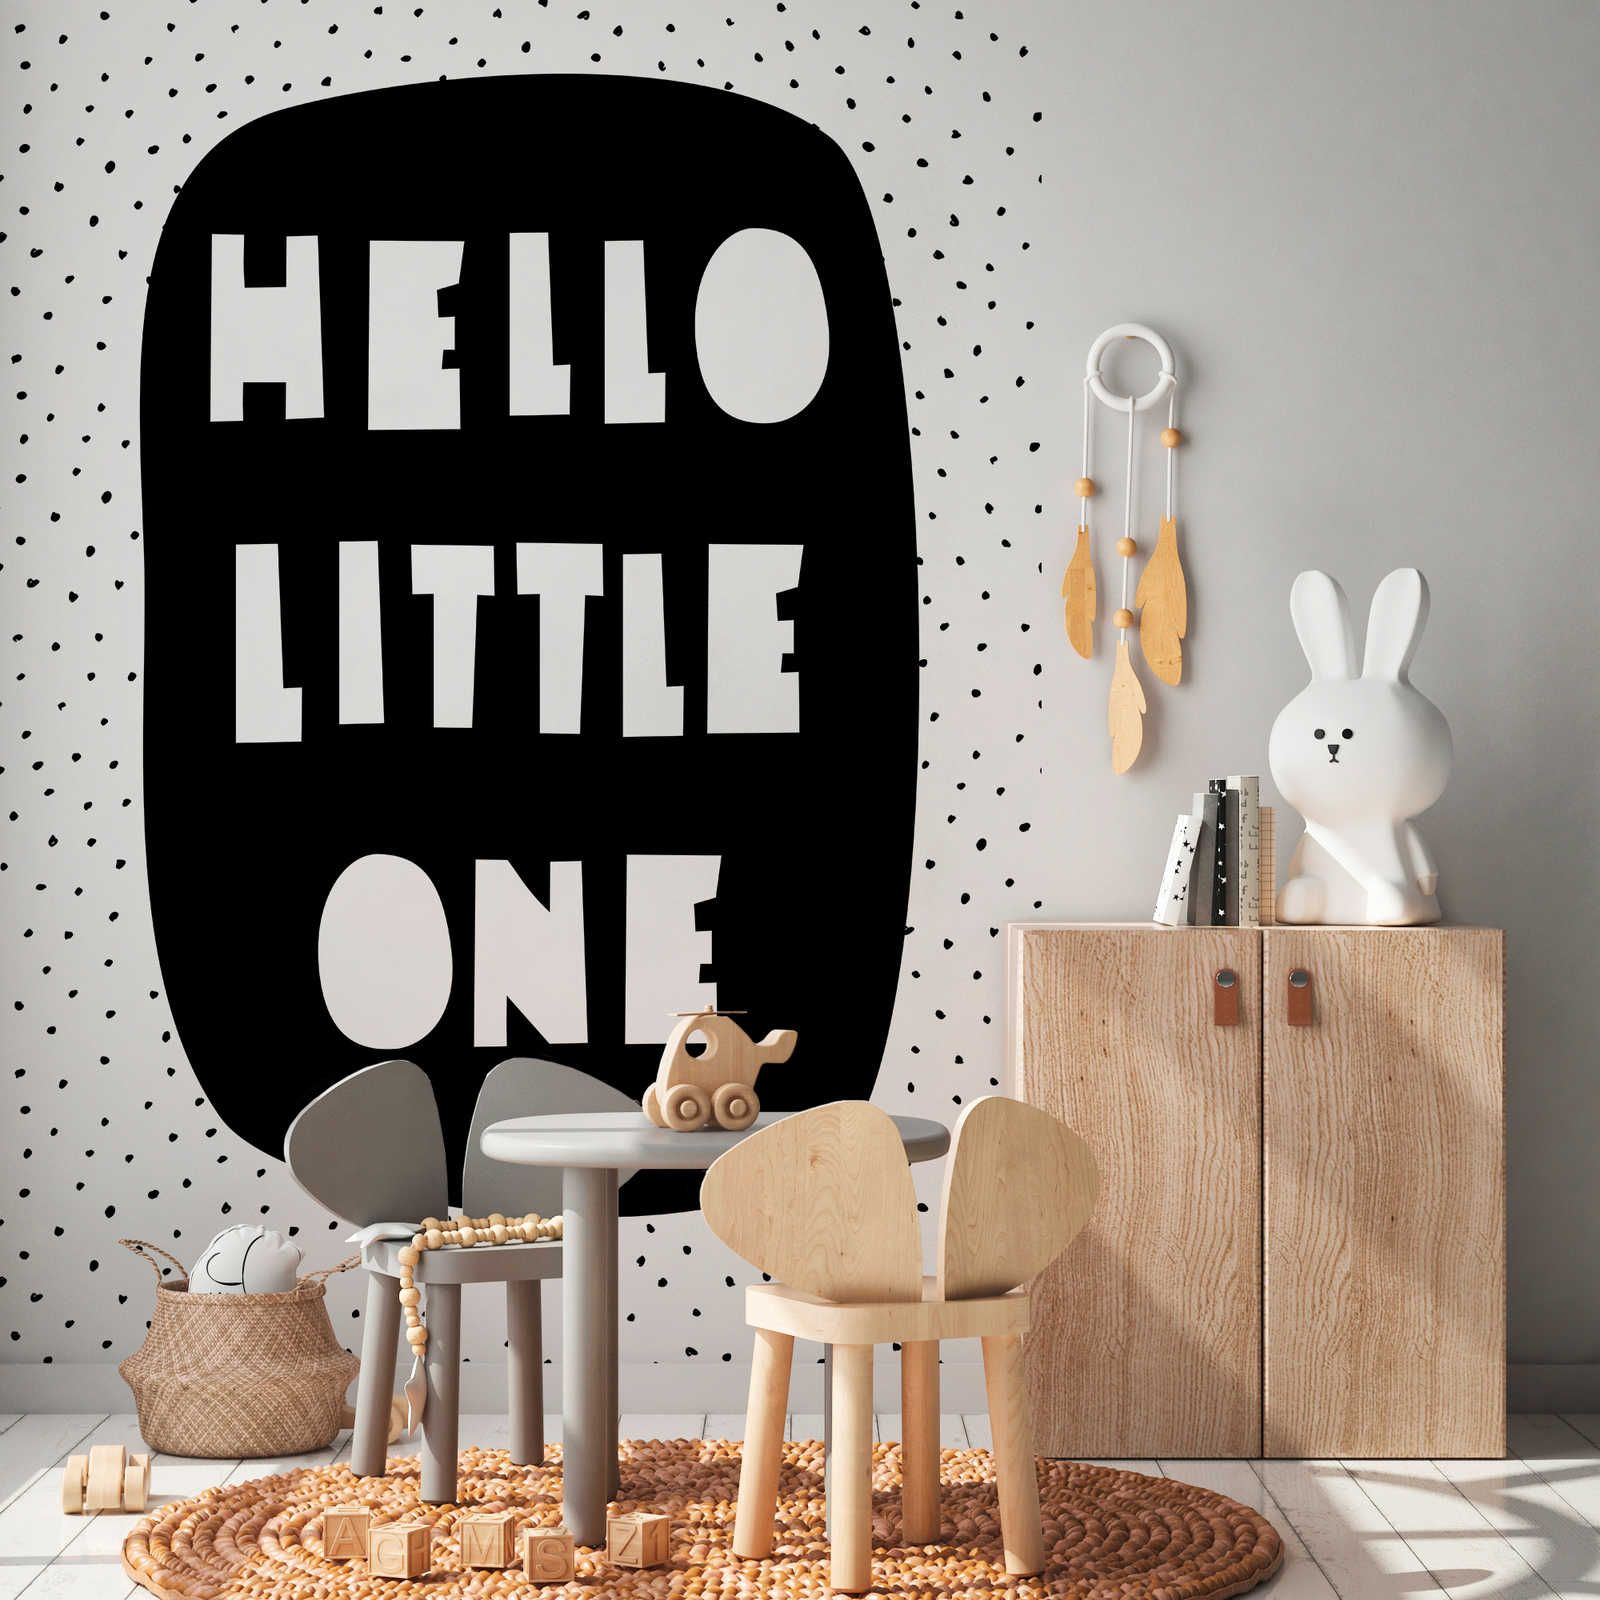 Fotomurali per la camera dei bambini con scritta "Hello Little One" - Pile liscio e perlato
